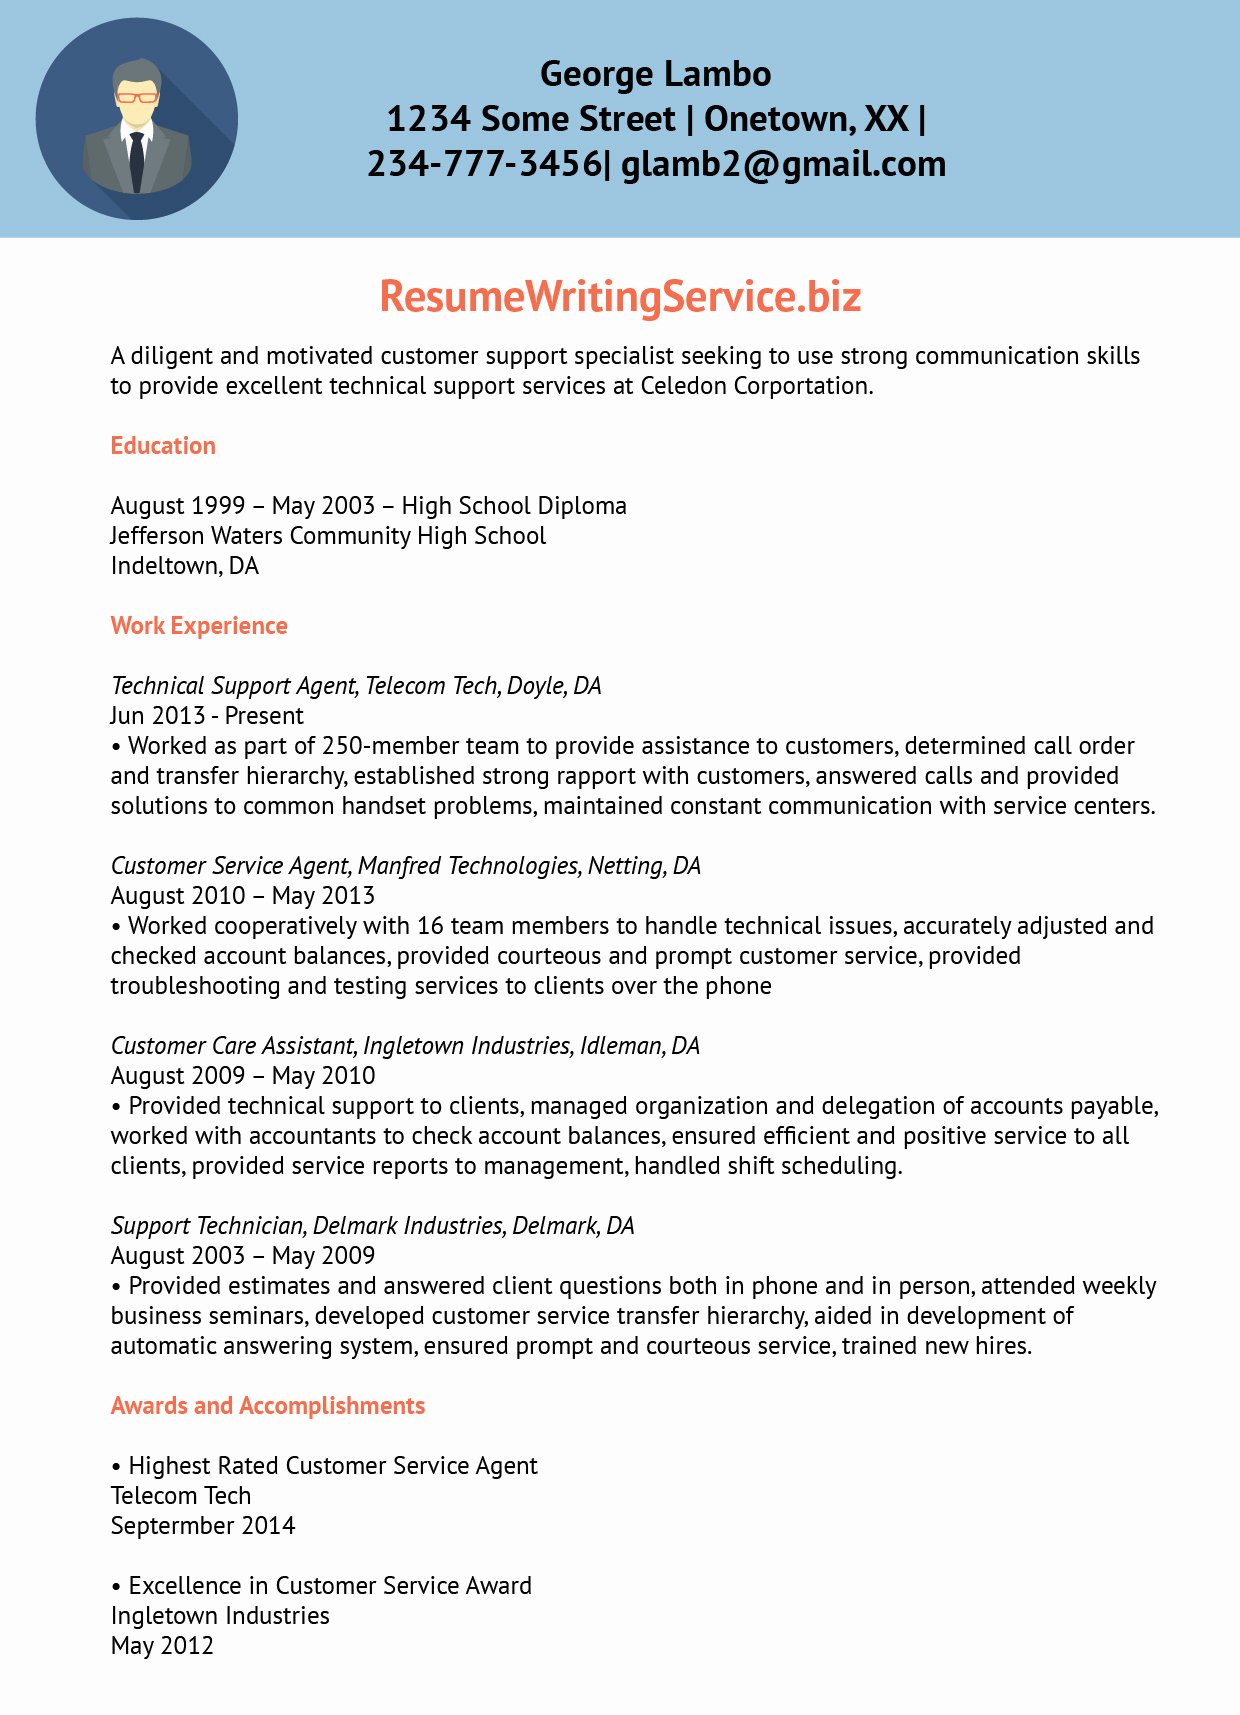 Resume letter